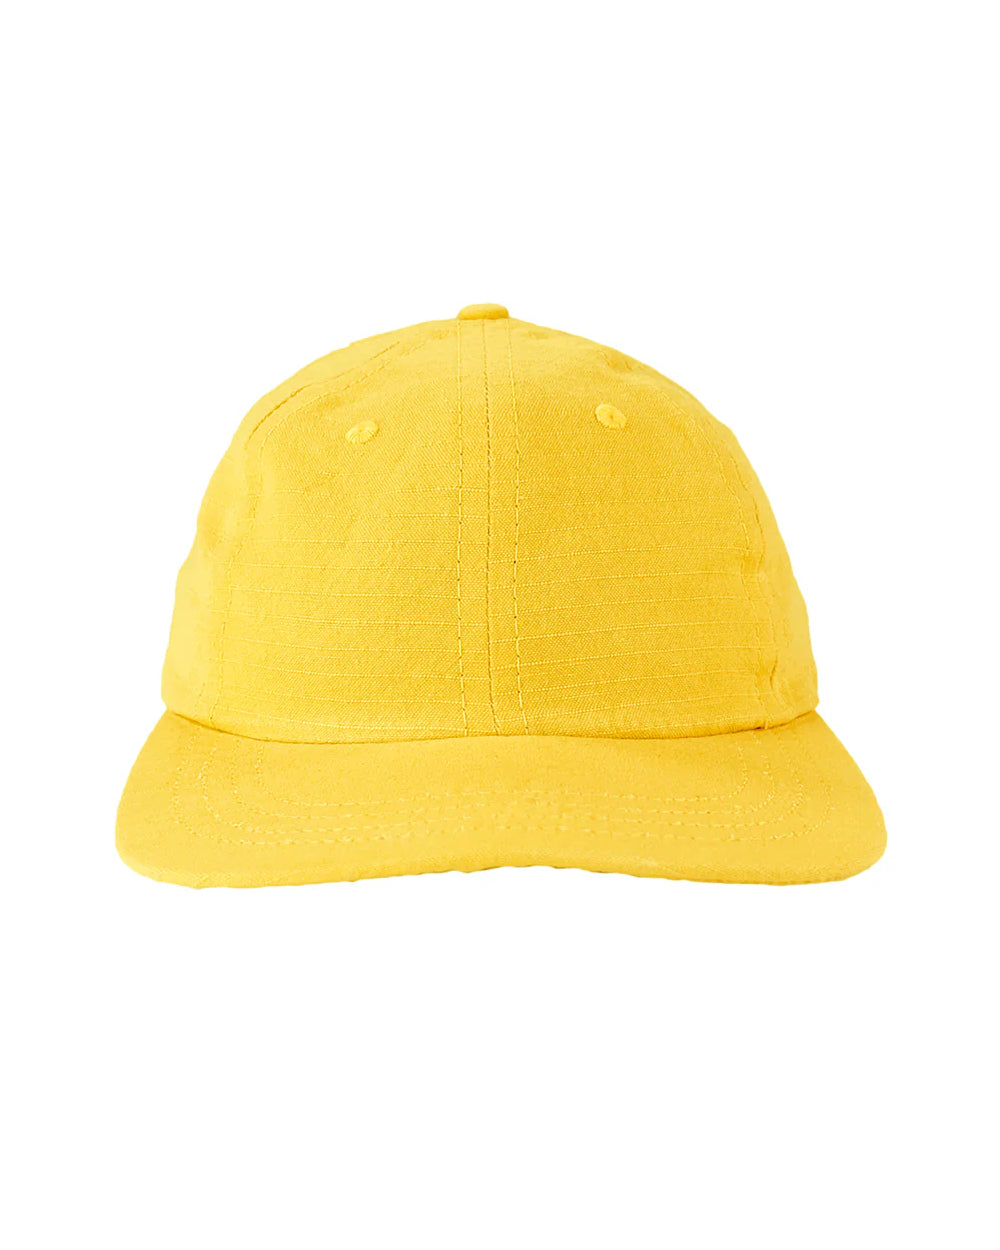 Chenga Ripstop Cap - Sunshine Yellow